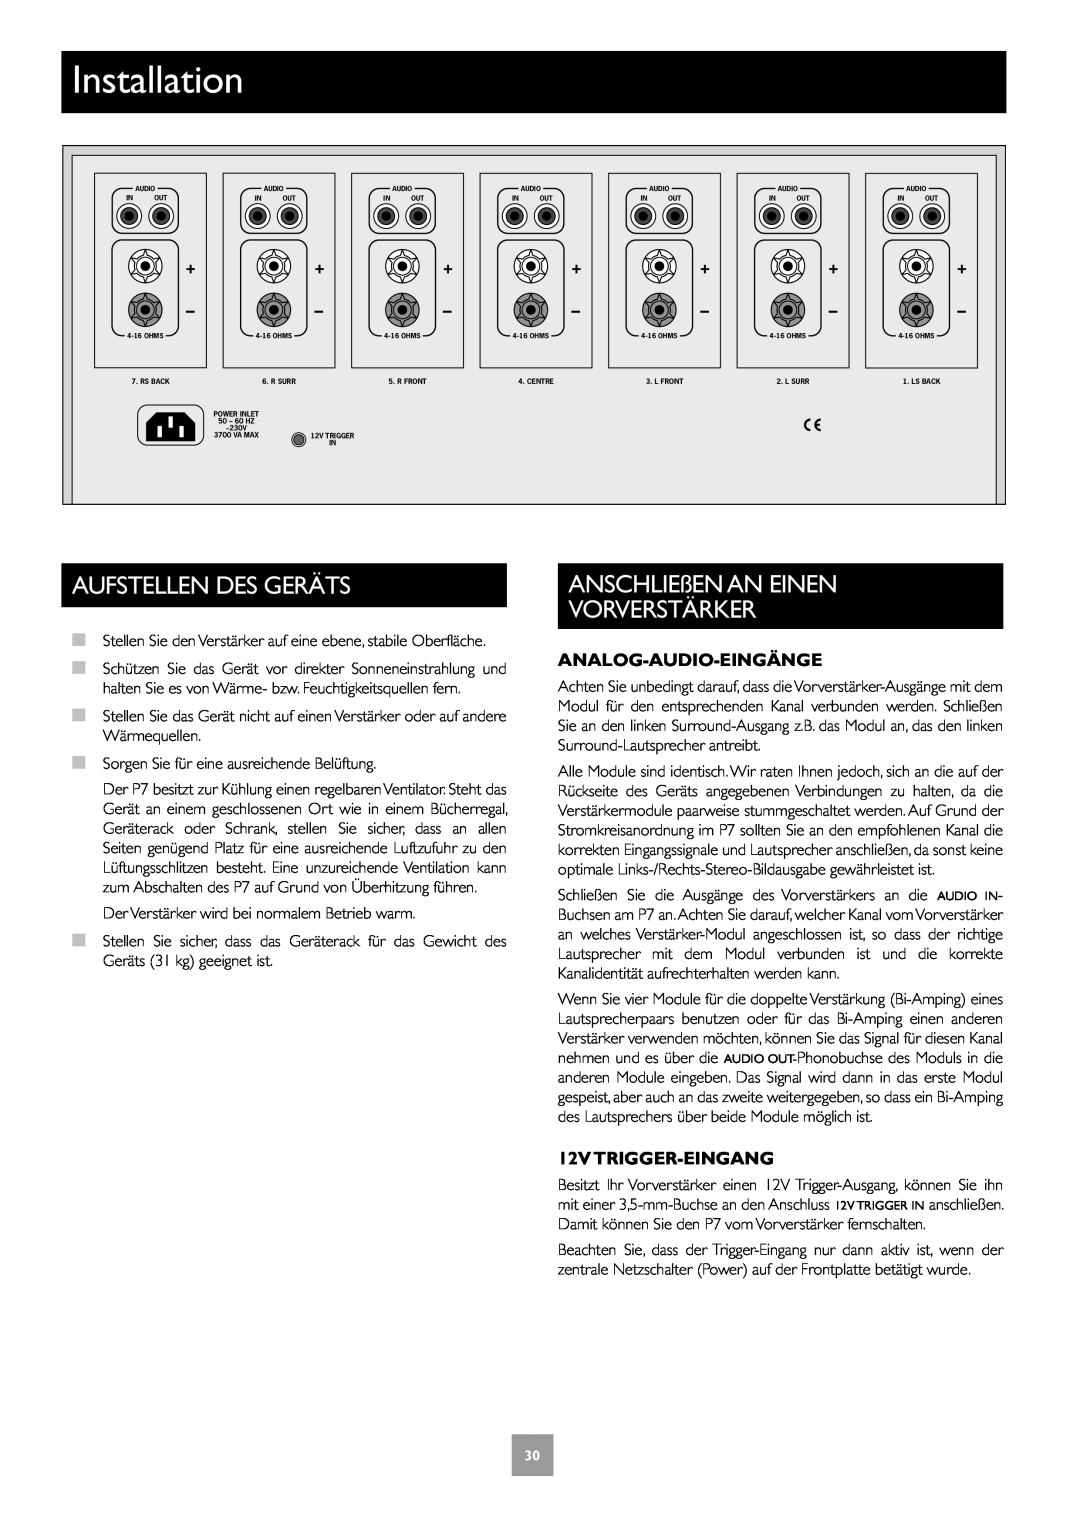 Arcam Multichannel Power Amplifier manual Aufstellen Des Geräts, ANSCHLIEßEN AN EINEN VORVERSTÄRKER, Analog-Audio-Eingänge 